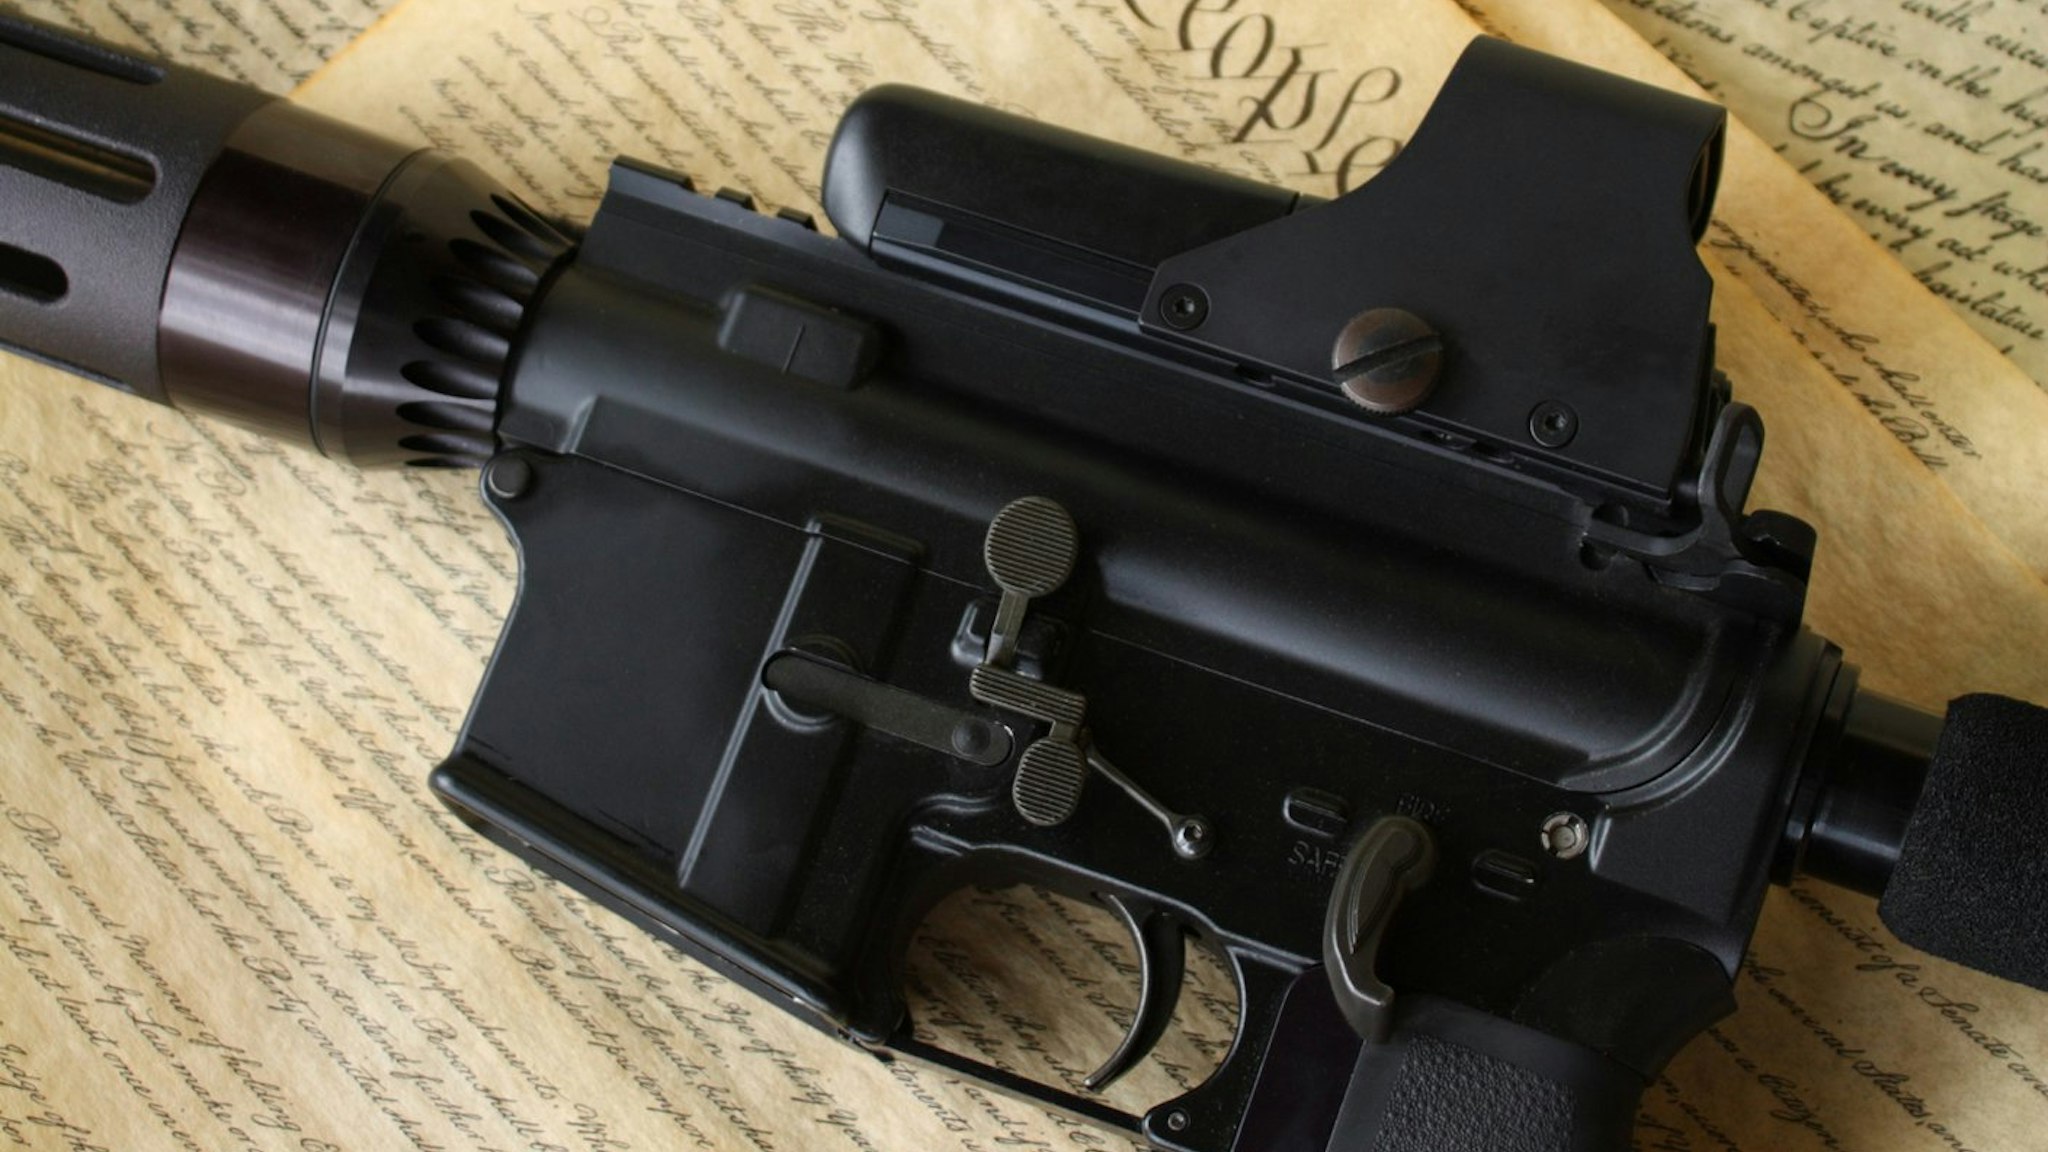 AR-15.